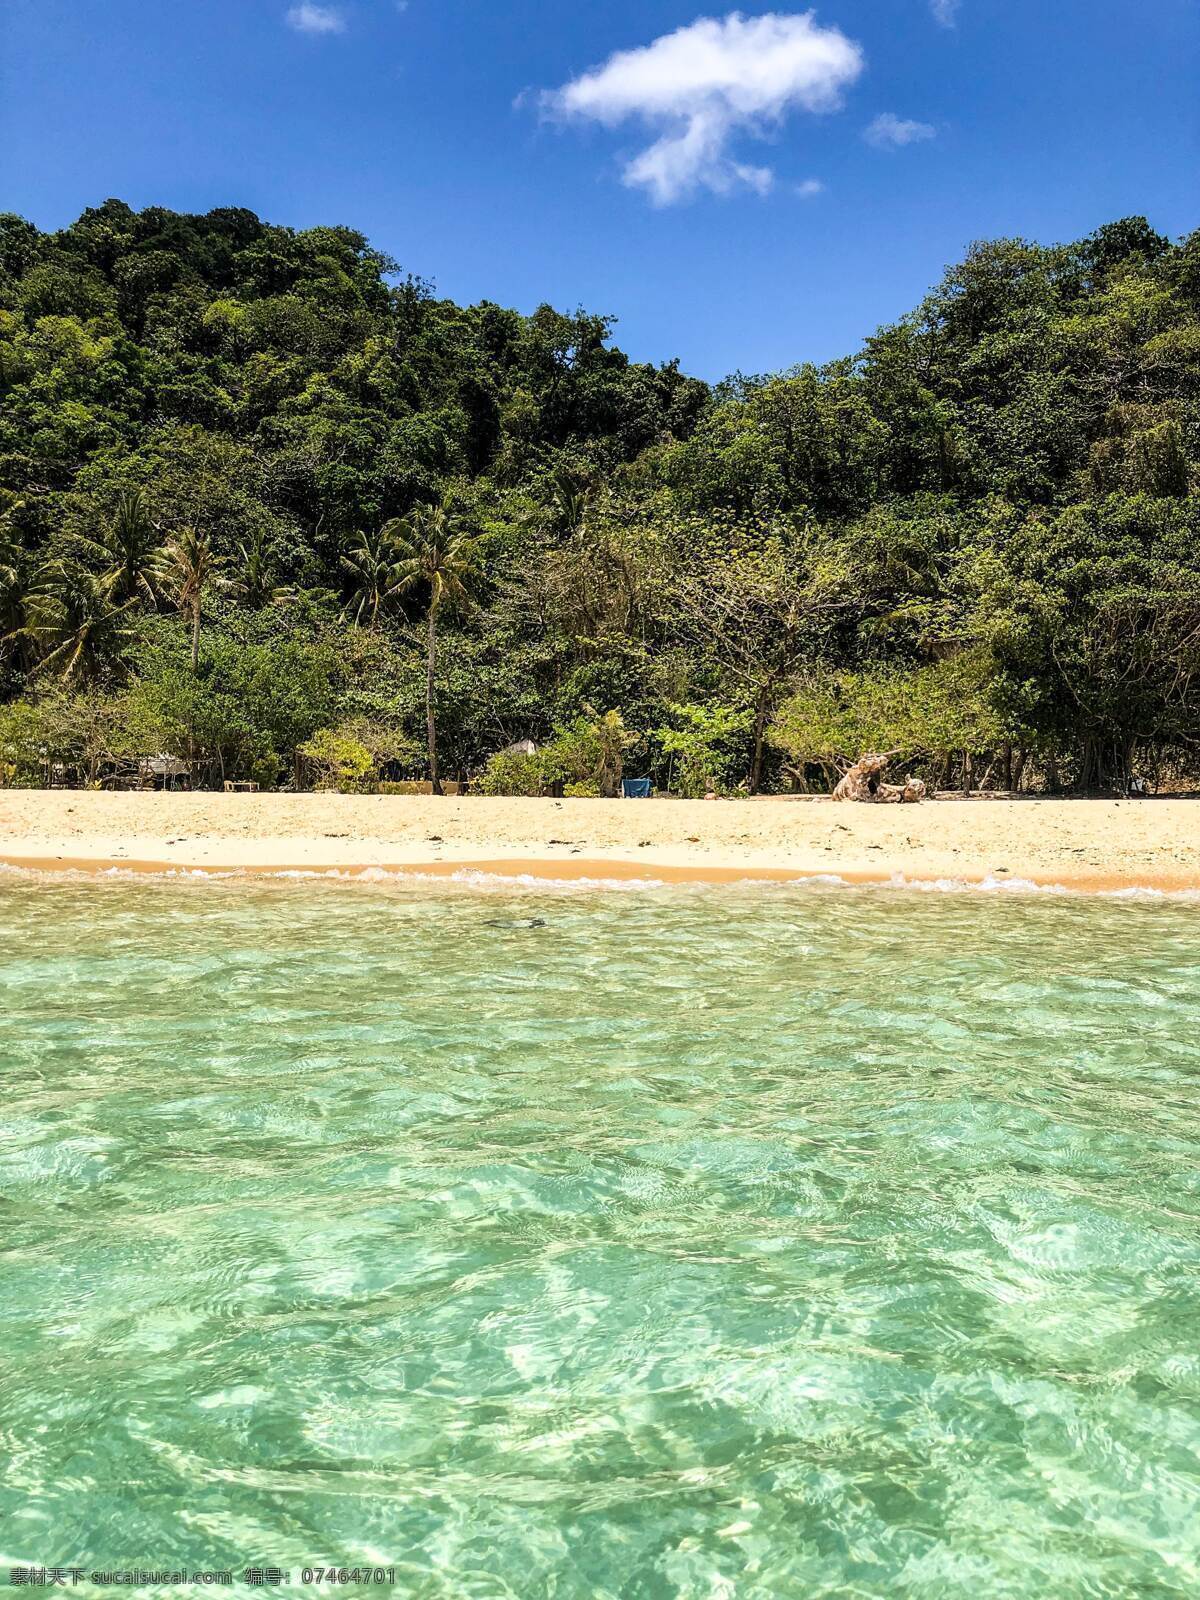 清新海岛 旅游 欧美 蓝天 白云 阳光 海岛 绿树 沙滩 海水 碧绿 潜水 清澈 岩石 清新 拍摄 摄影类 自然景观 自然风景